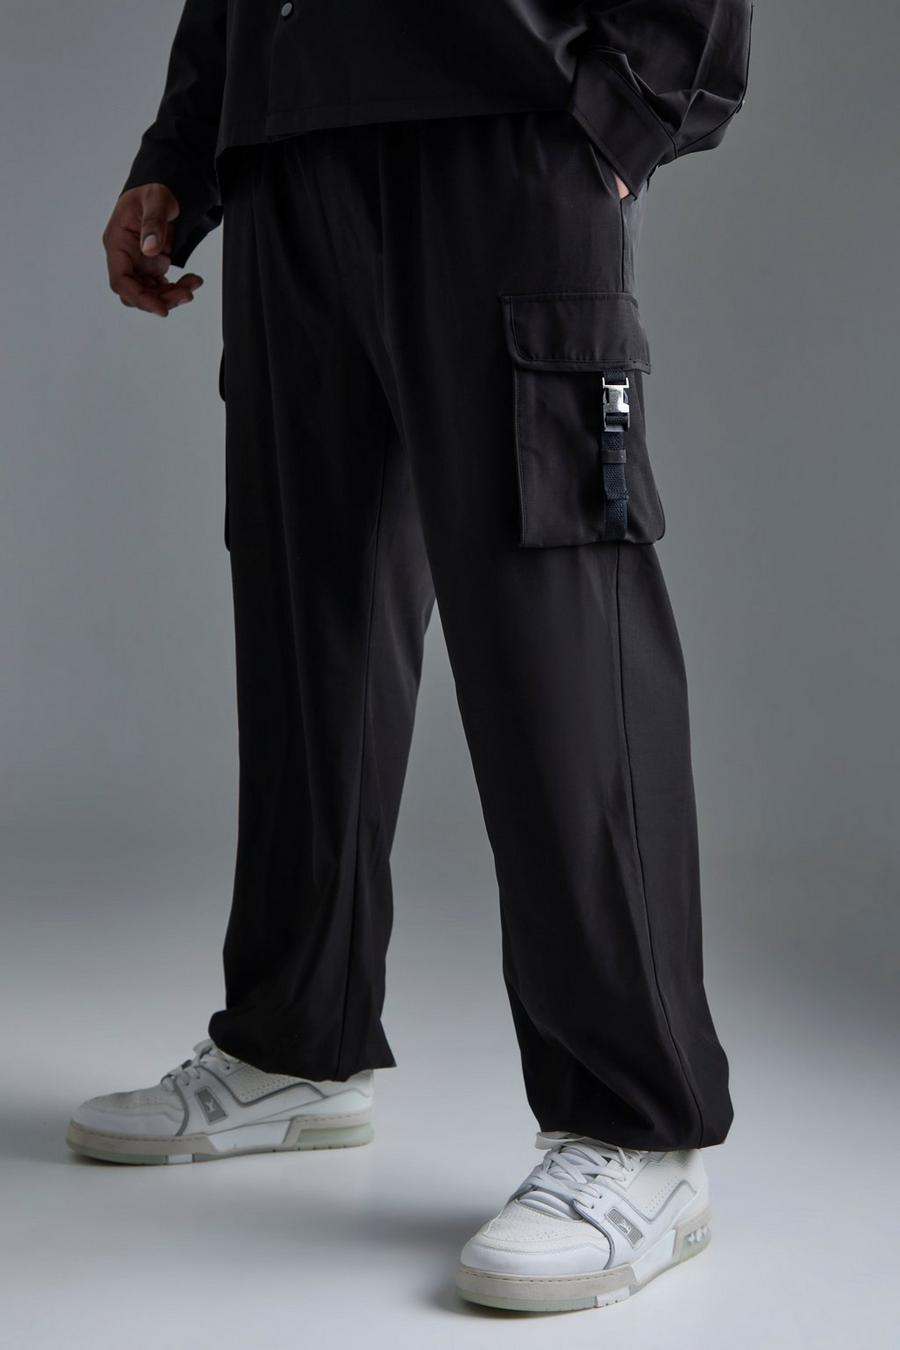 Pantalón Plus cargo utilitario elástico técnico con cintura elástica, Black